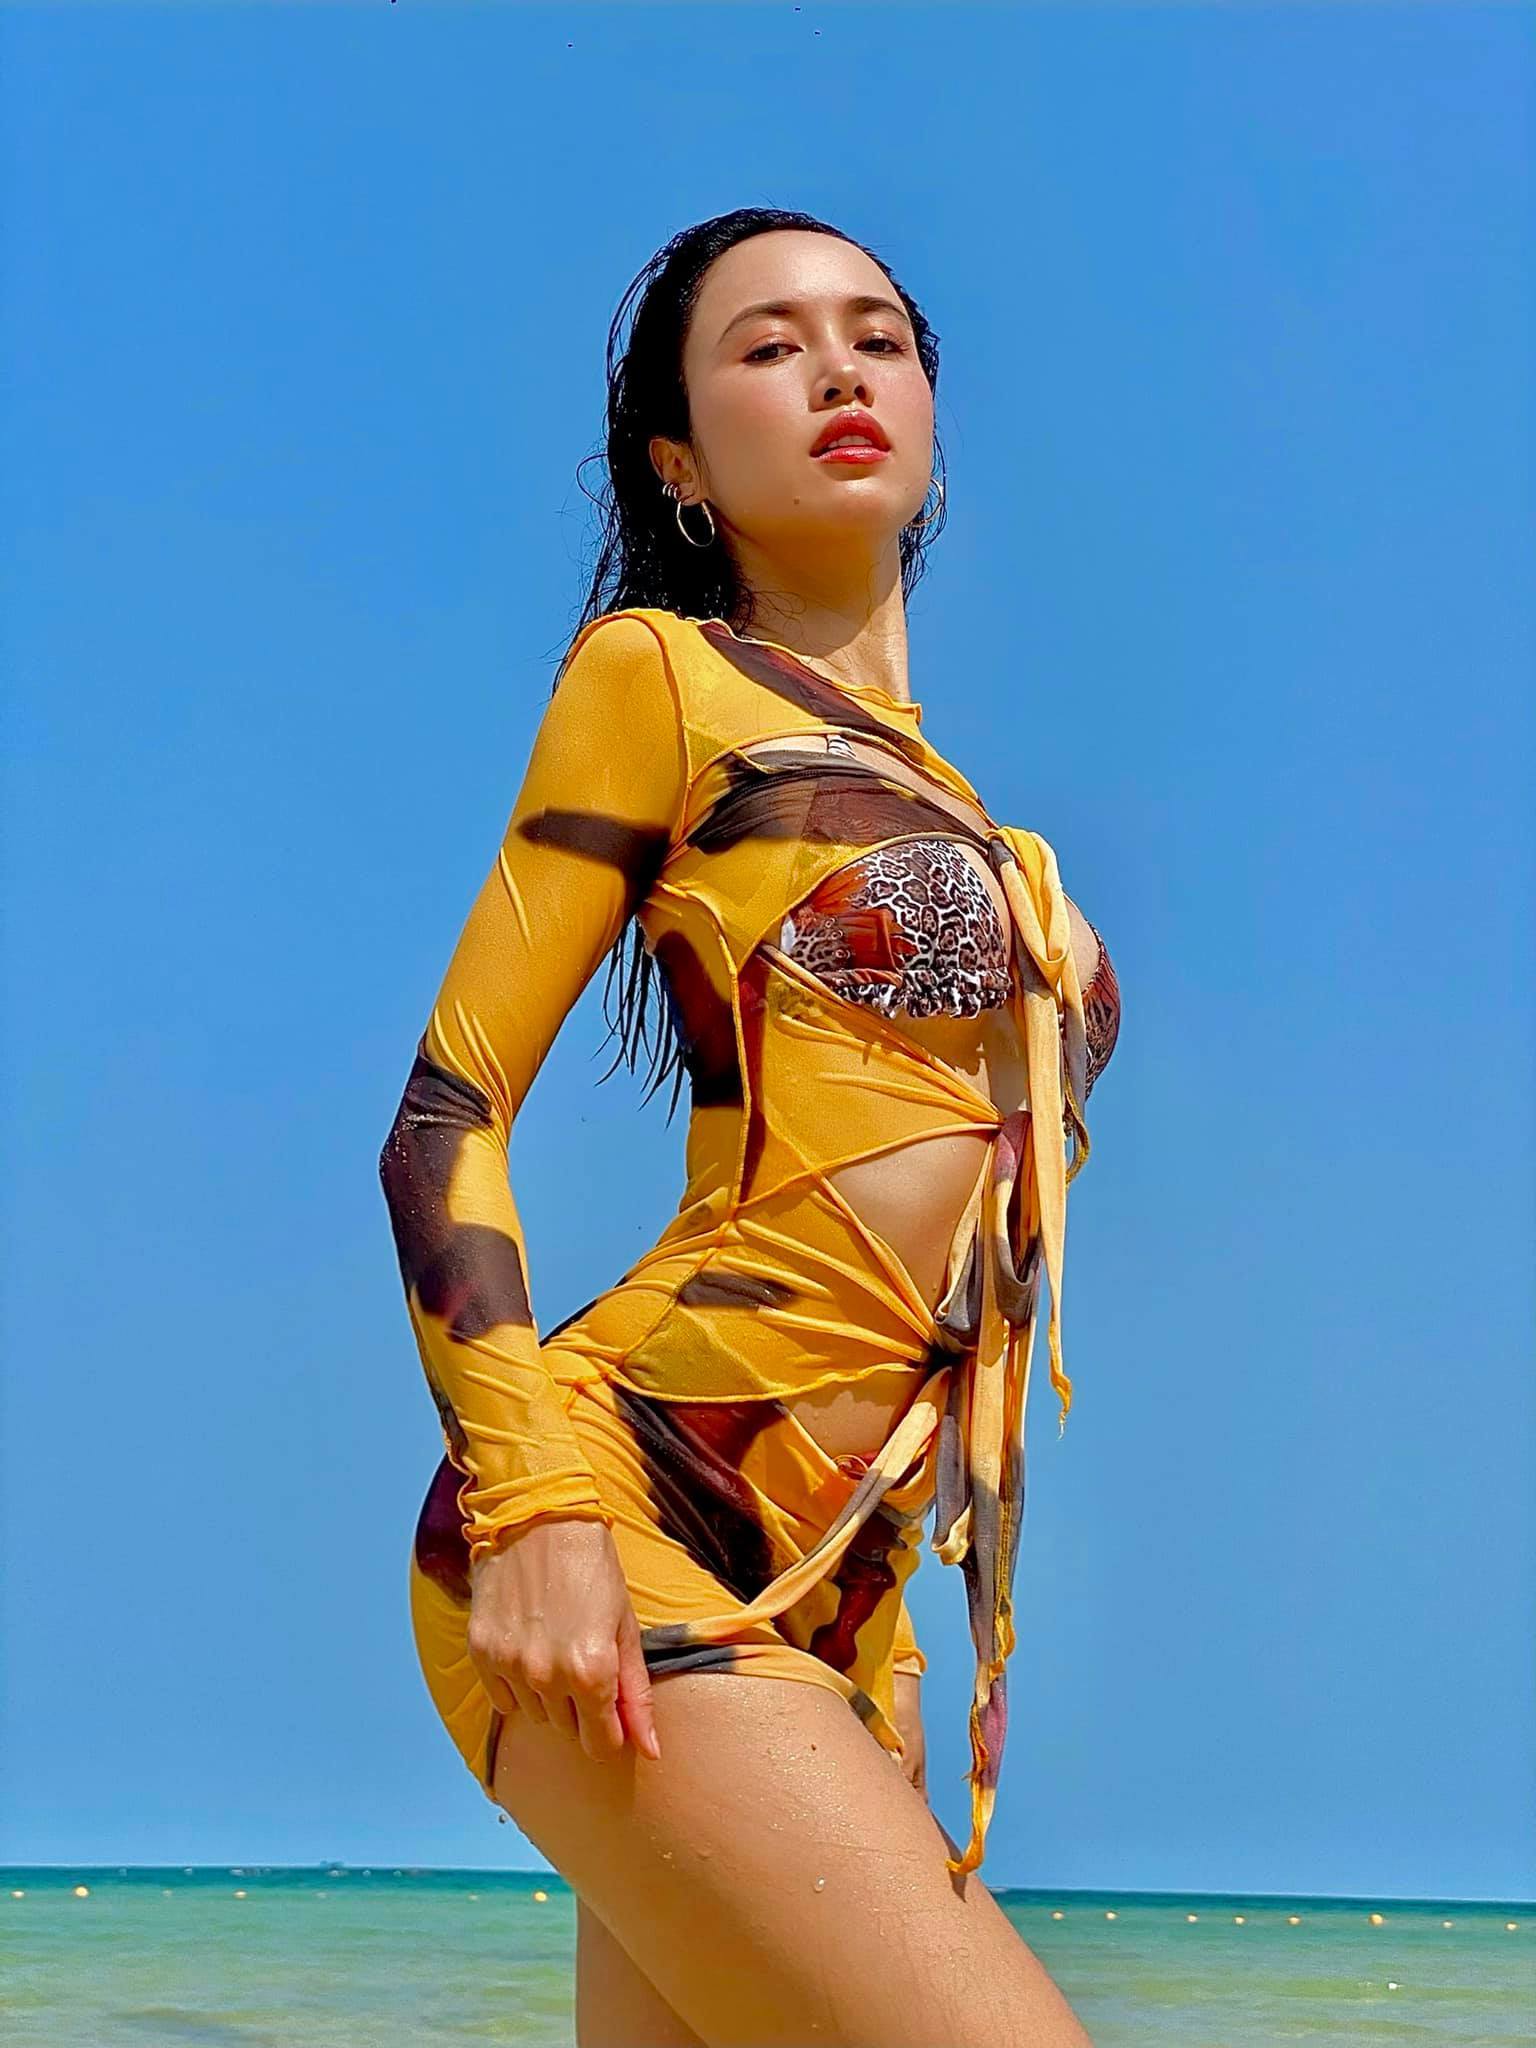 Diễn viên sexy nhất nhì showbiz Việt dáng bốc lửa nhờ luyện boxing - Ảnh 21.